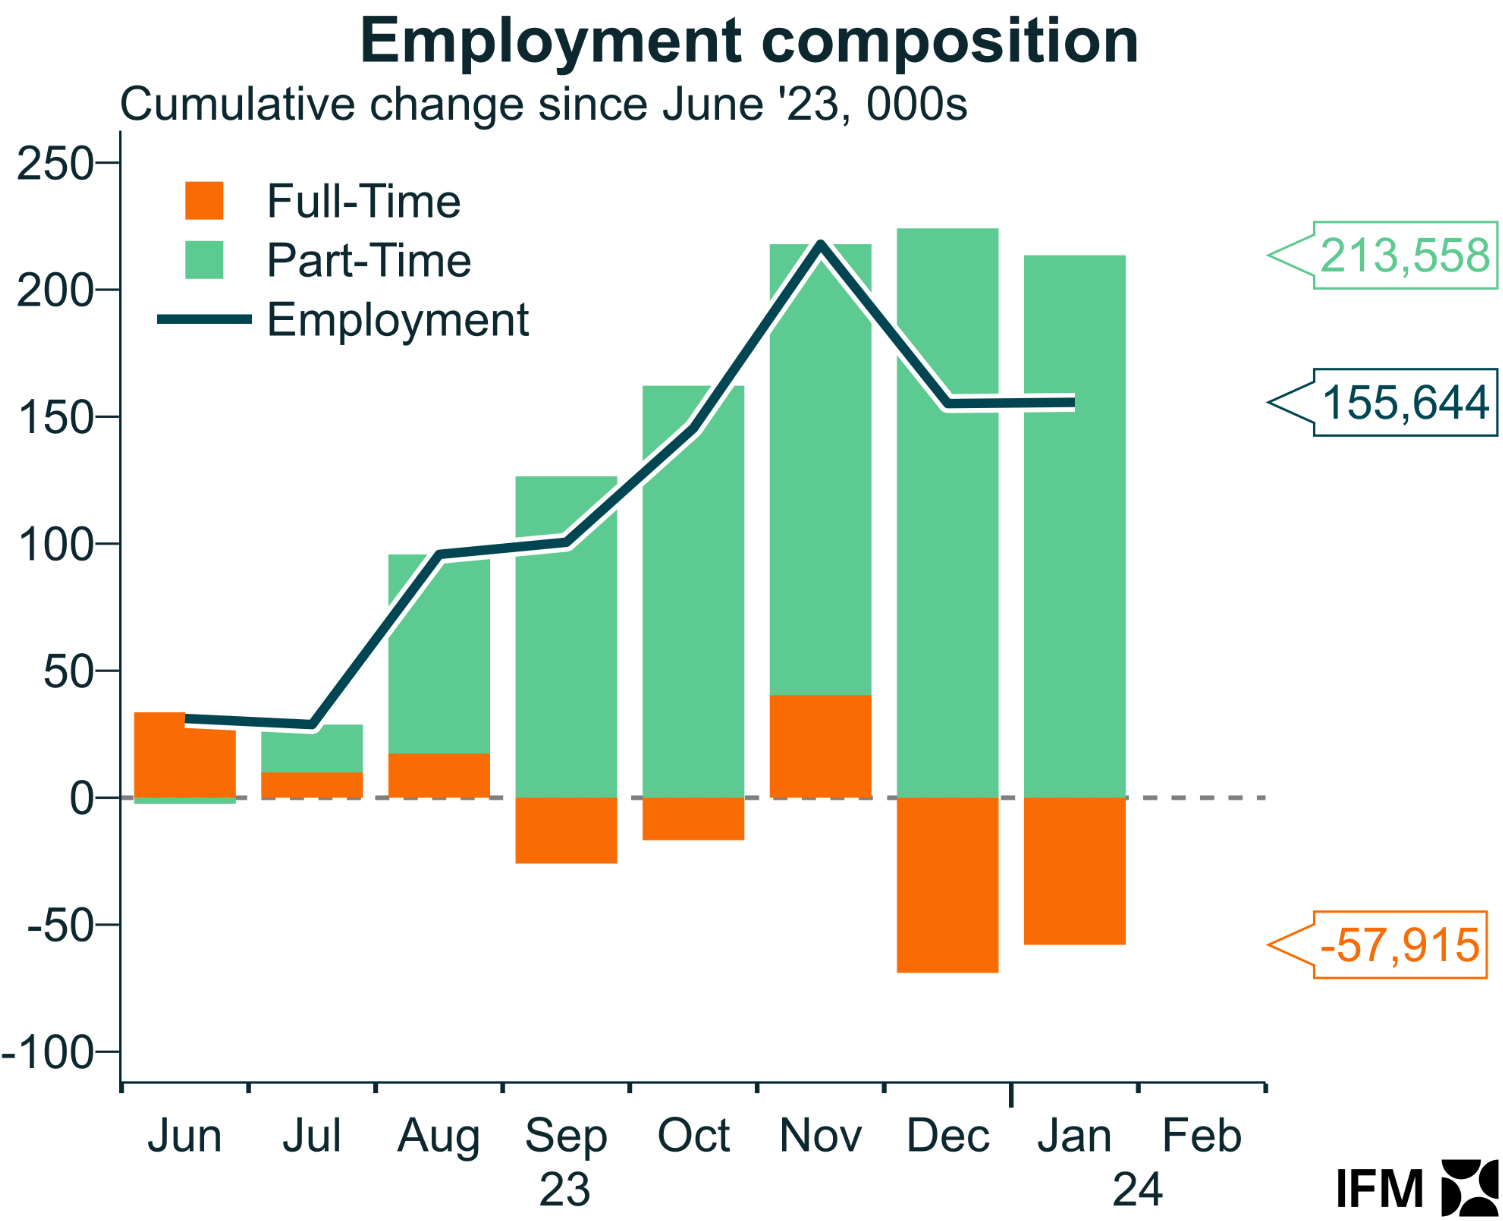 Australia's employment composition